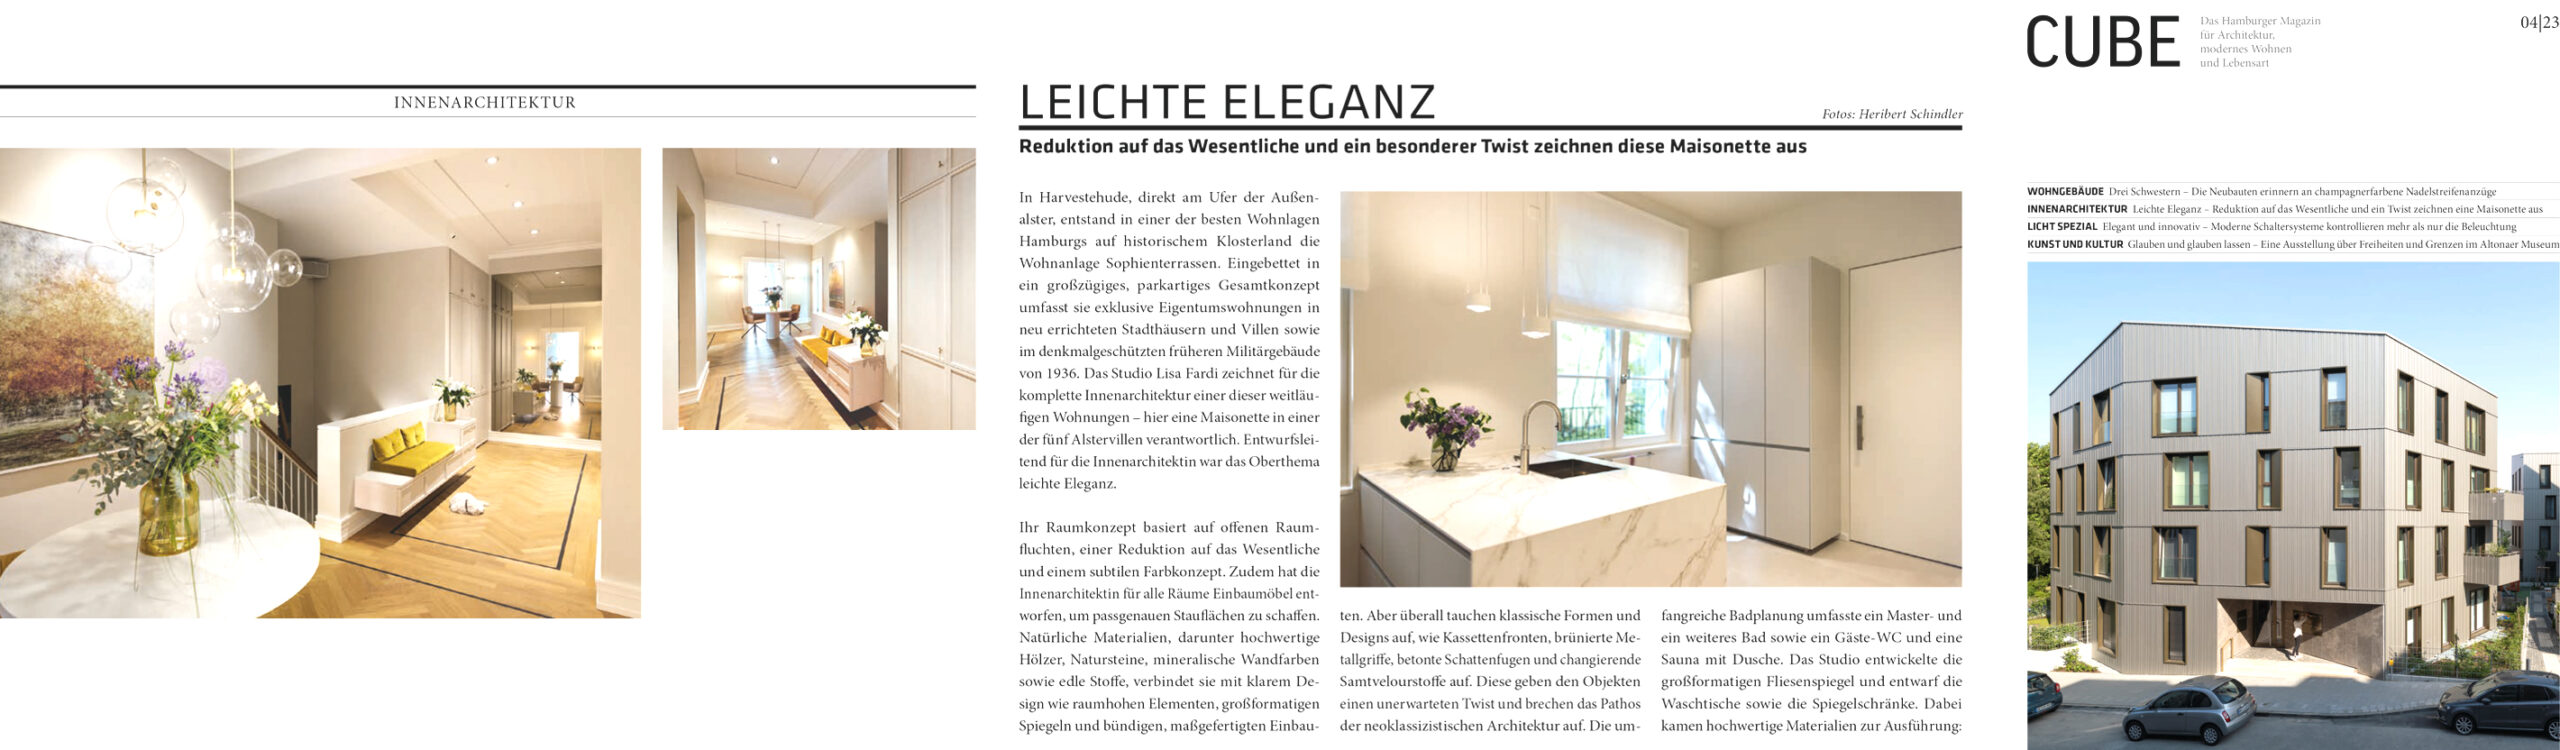 Artikel LEICHTE ELEGANZ im Cube Magazin über die Innenarchitektin Lisa Fardi. Projekt in den Sophienterrassen Hamburg